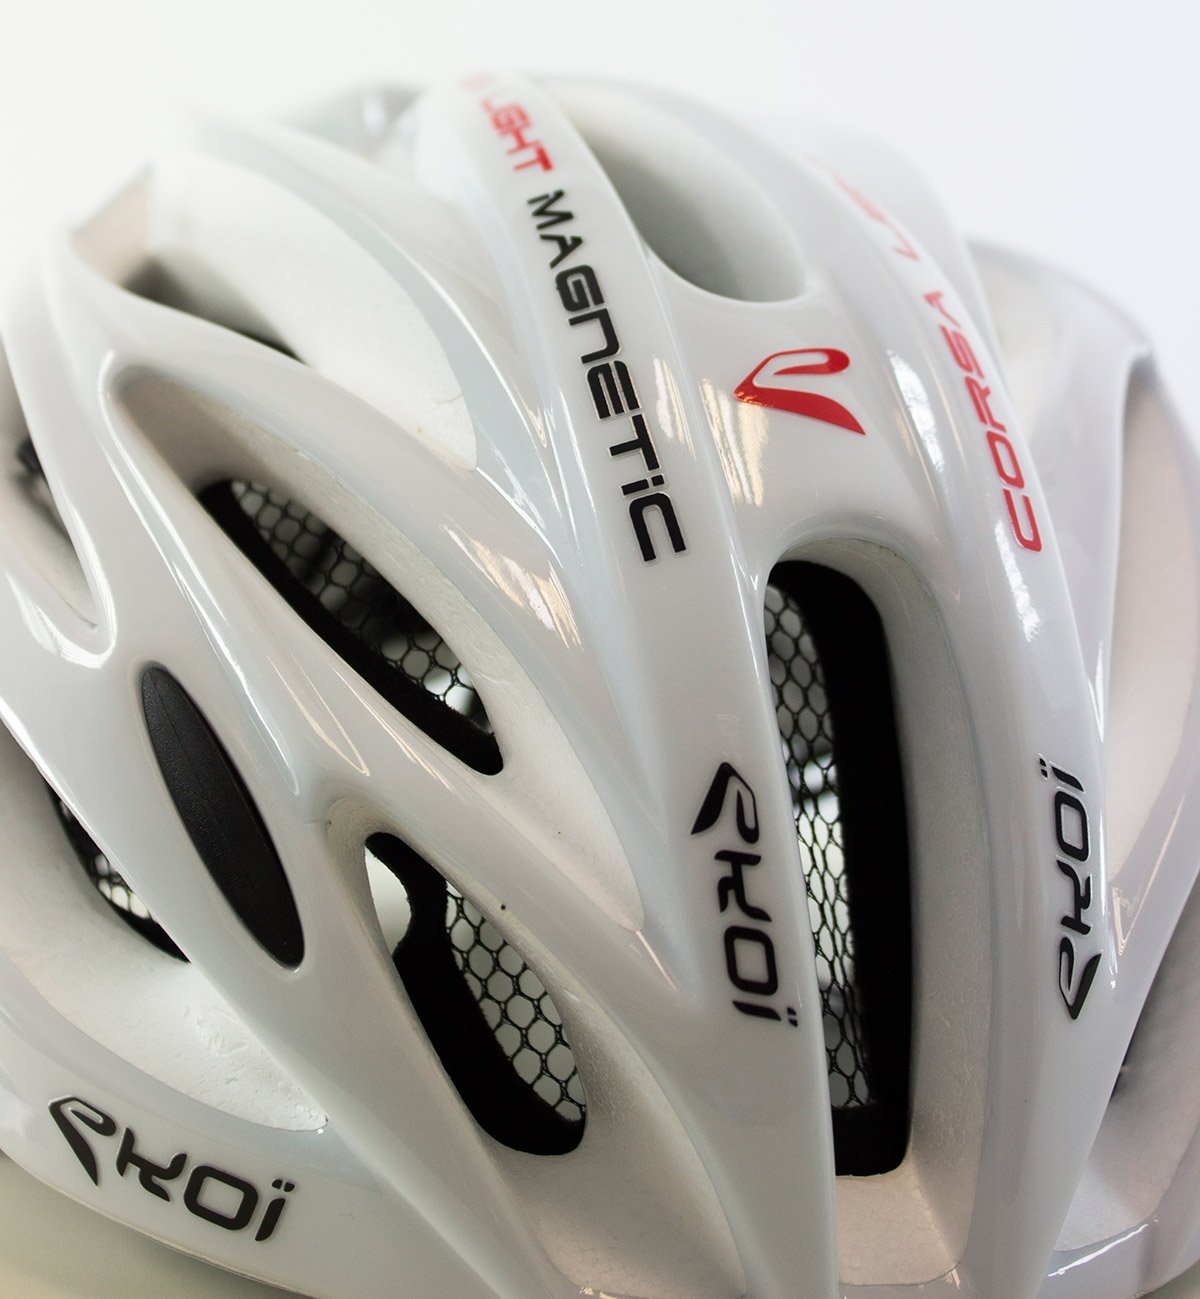 Ekoi Corsa Light - kit di adesivi per casco